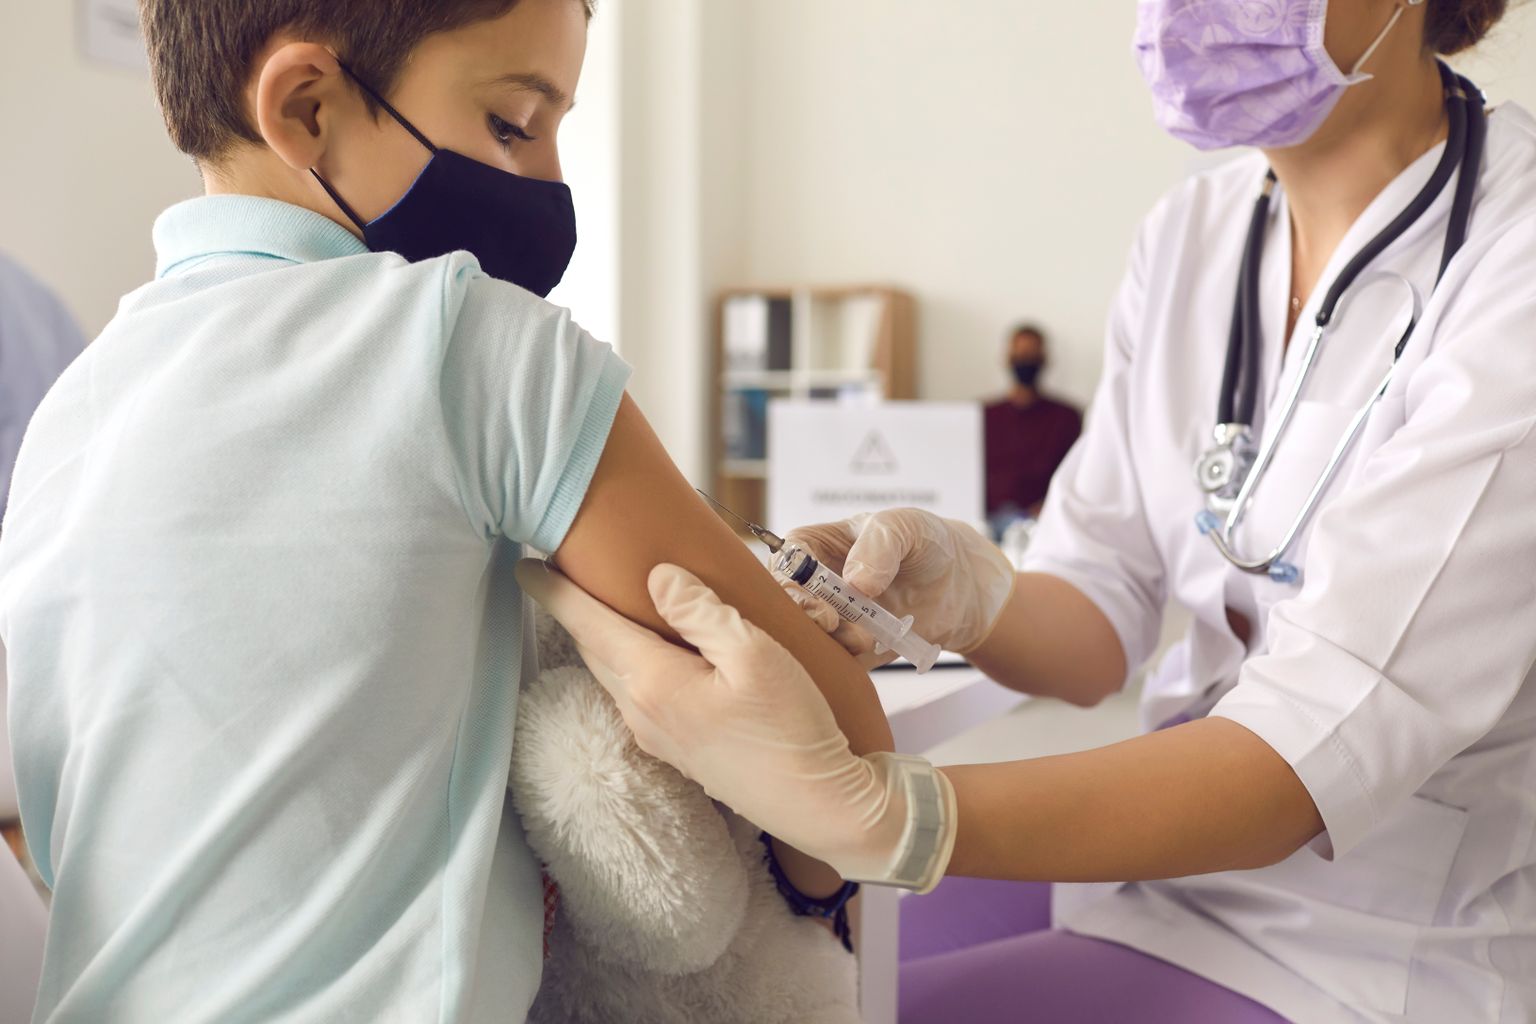 Laste vaktsineerimine on raskete nakkushaiguste ära hoidmisel väga oluline.